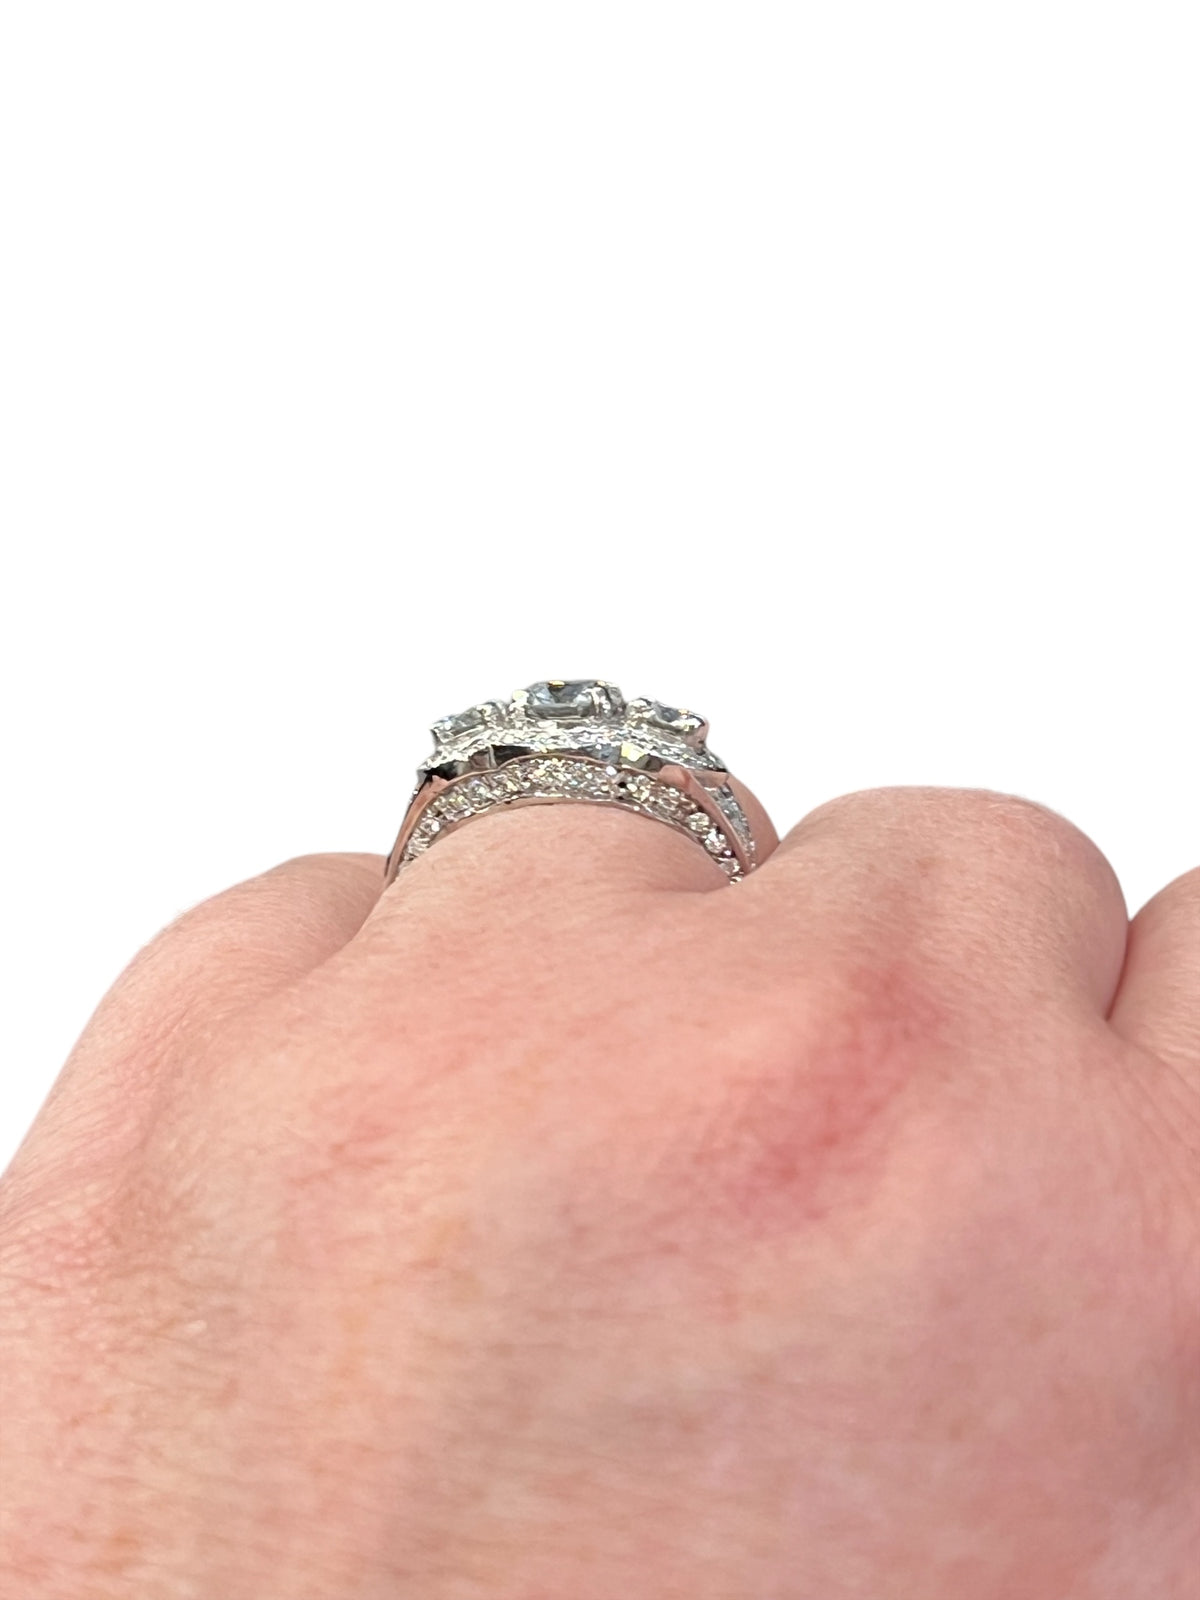 Anillo de compromiso con halo de diamantes de 2,52 quilates en oro blanco de 14 quilates, talla 6,5